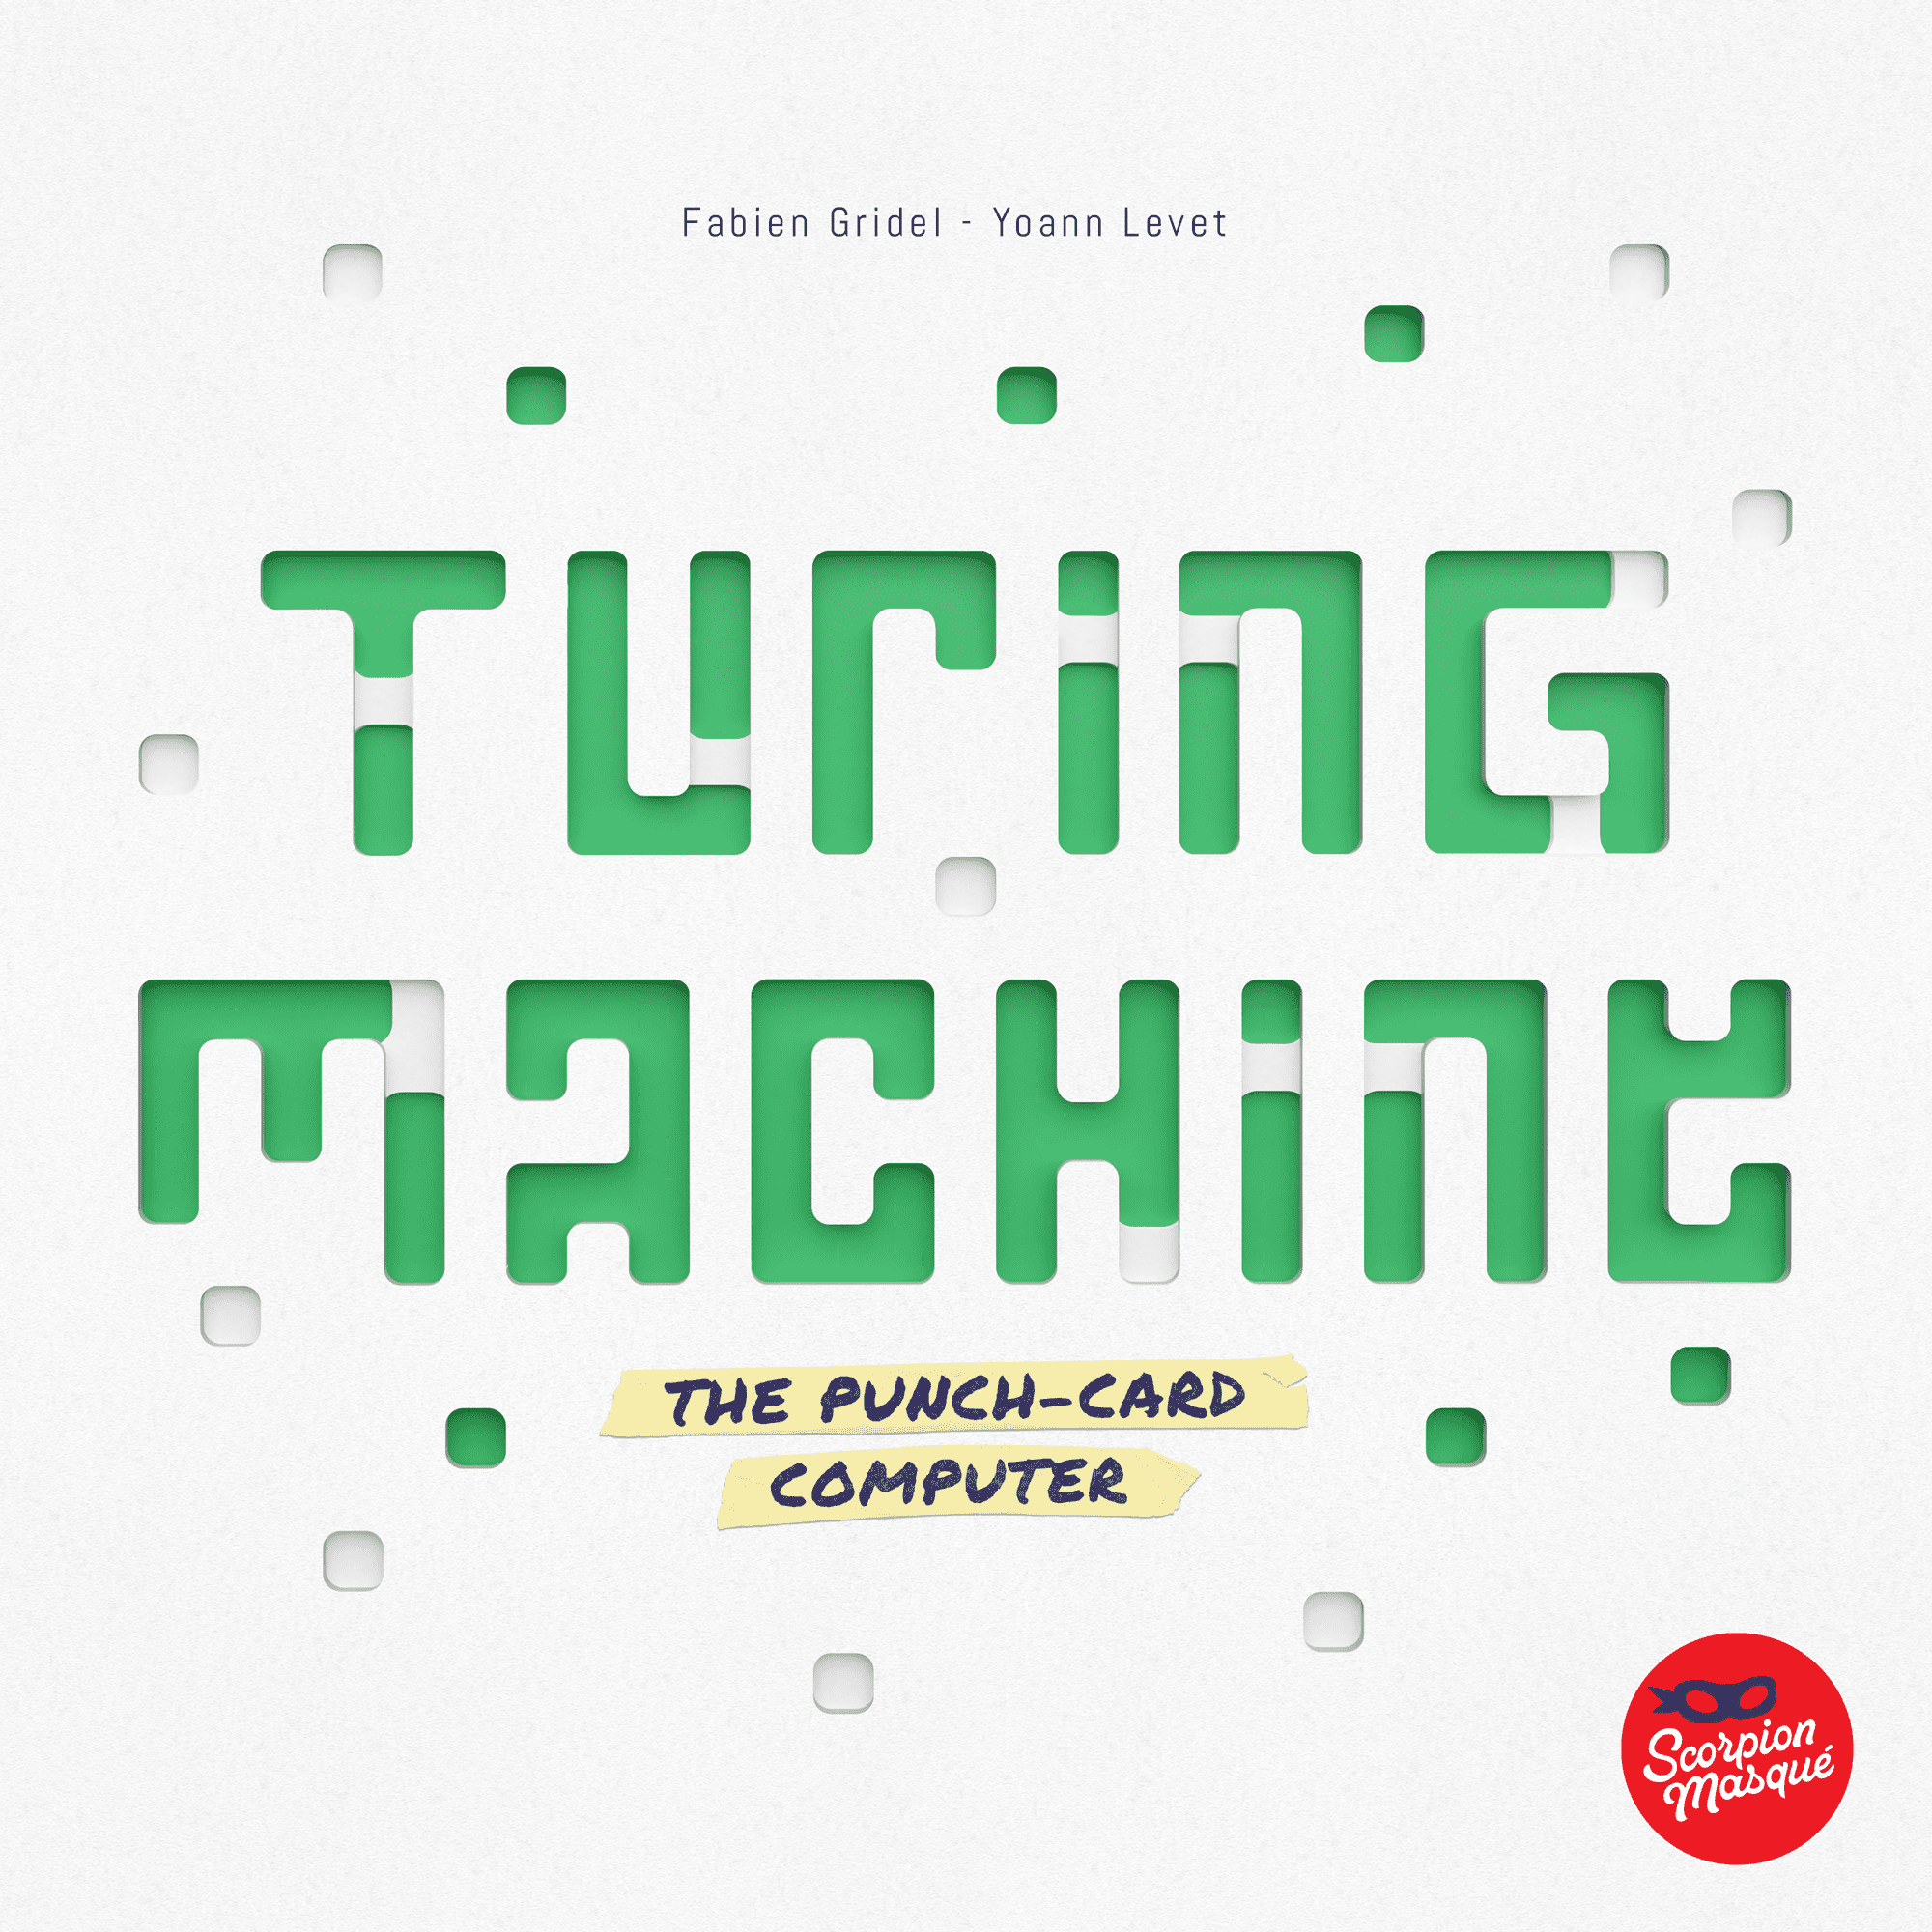 Le Scorpion Masqué Turing Machine